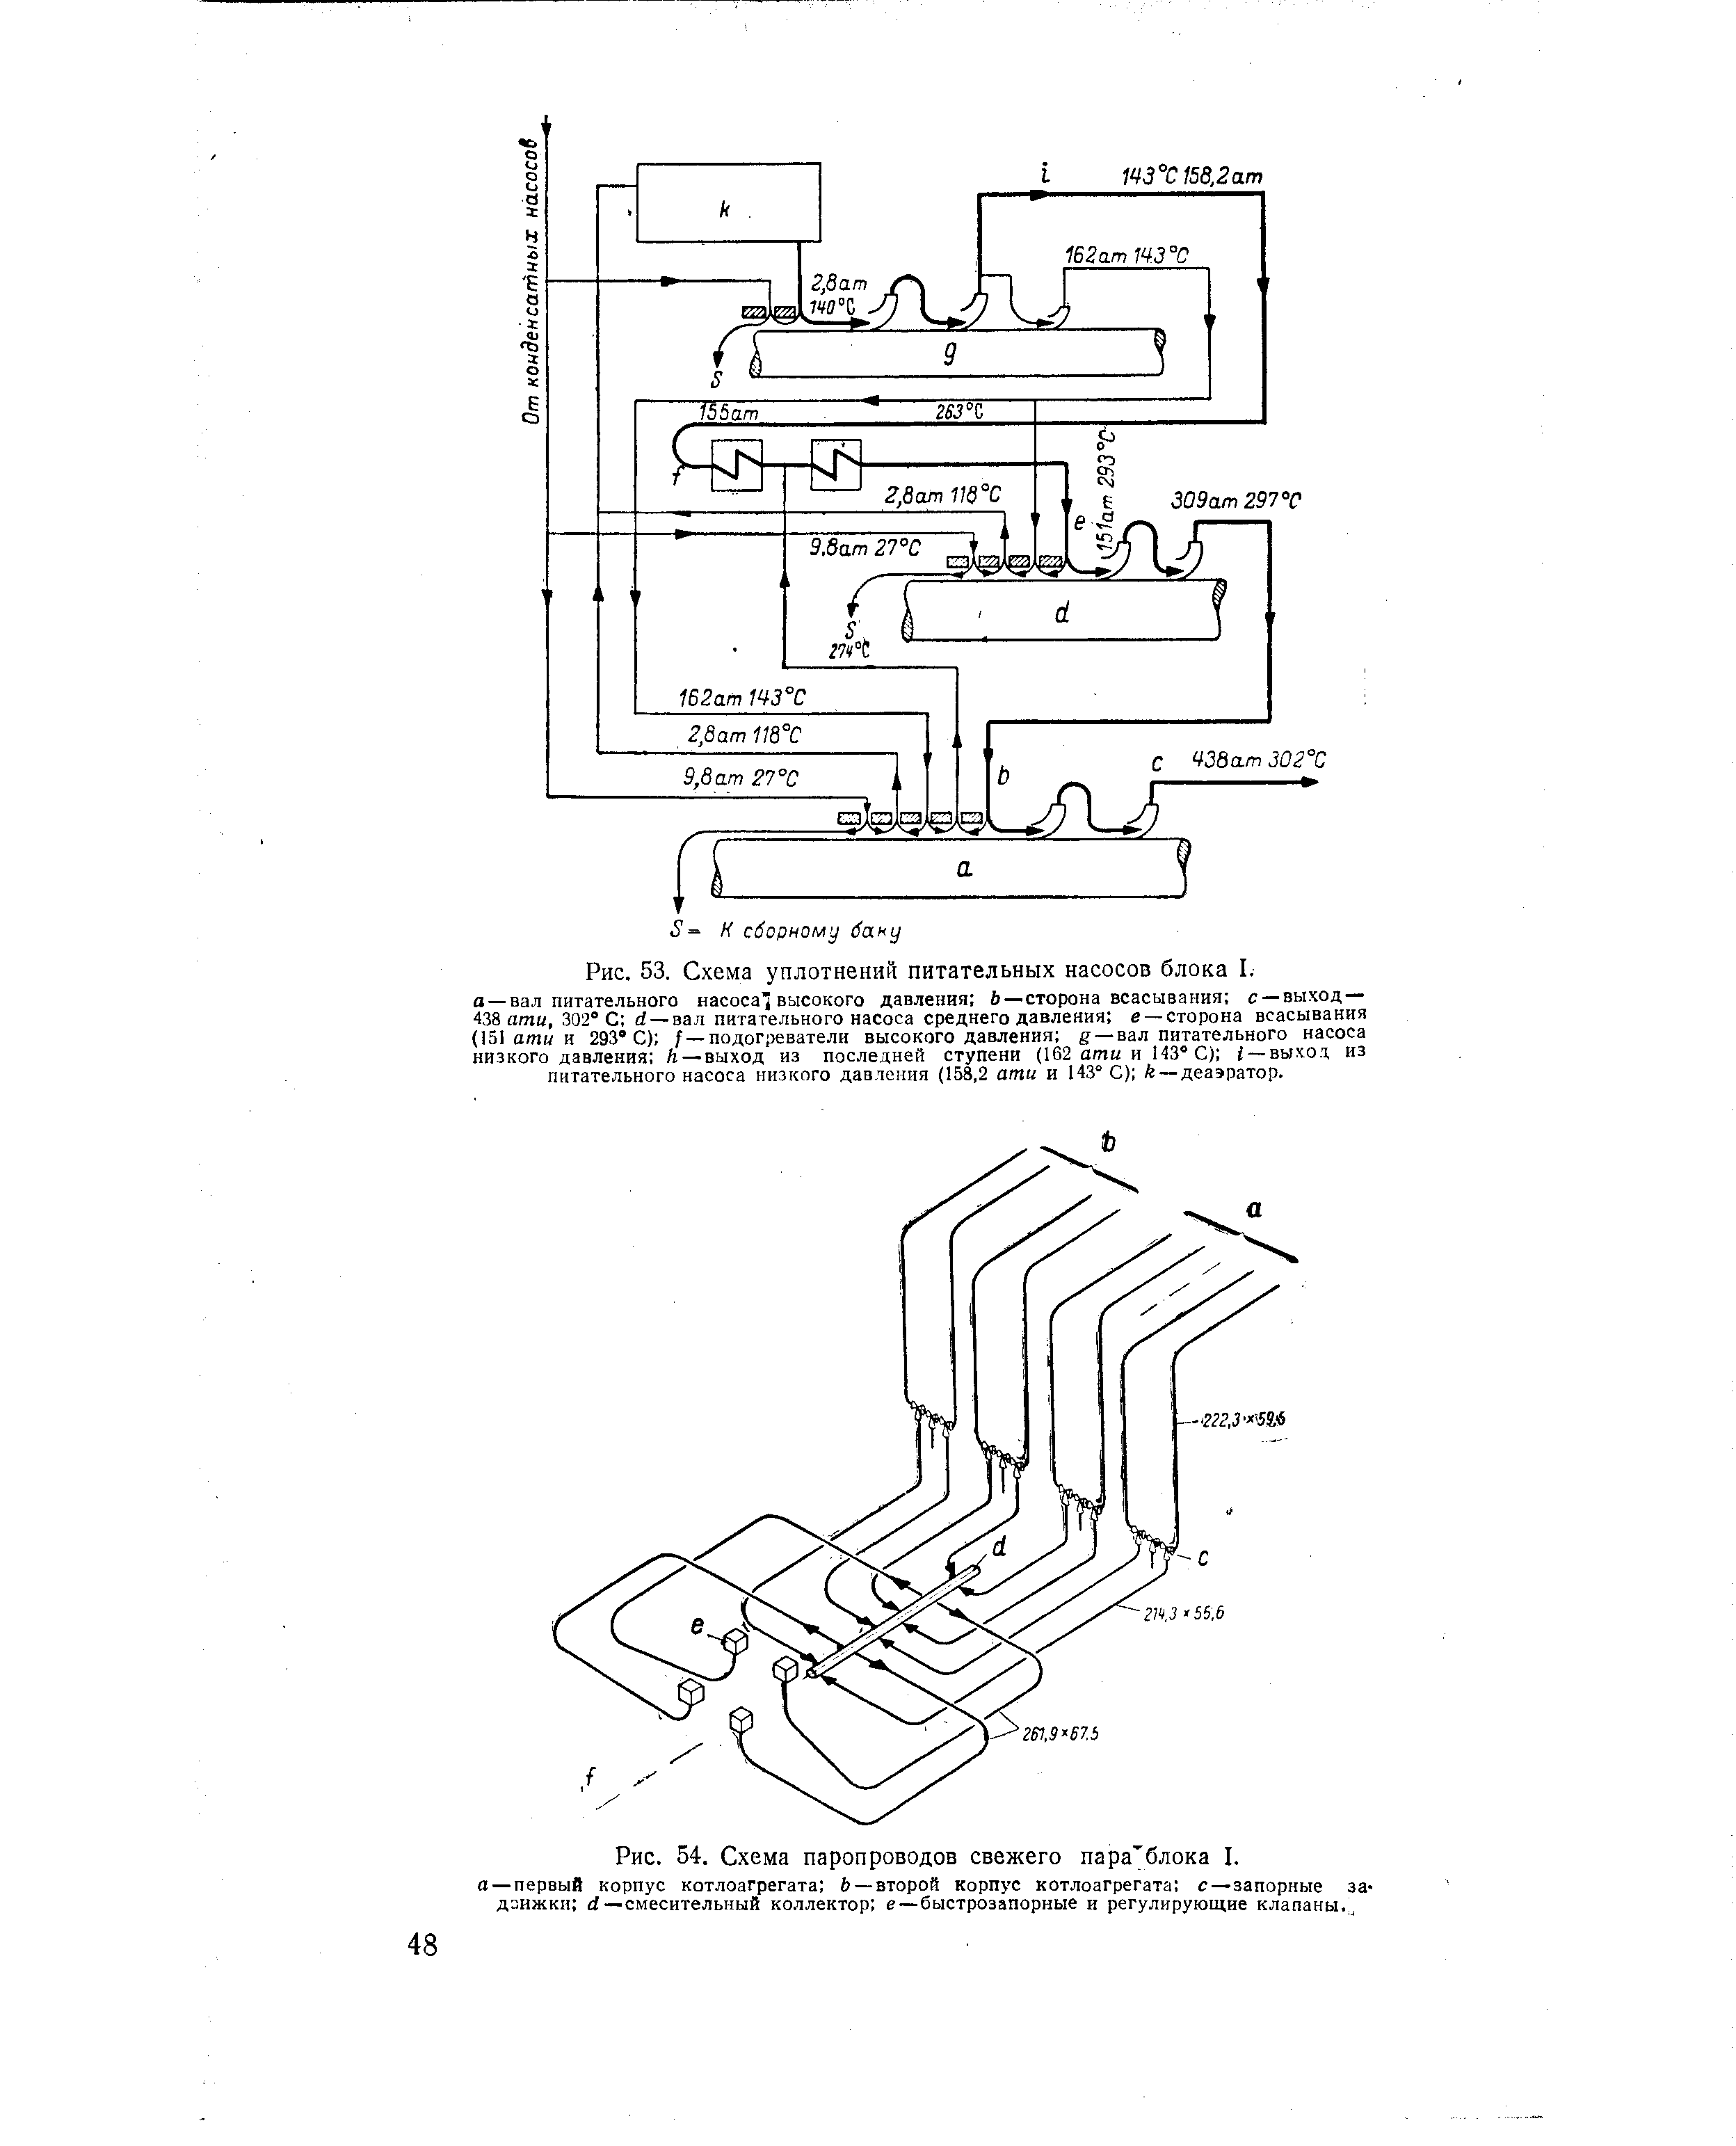 Рис. 54. Схема паропроводов свежего пара блока I.
